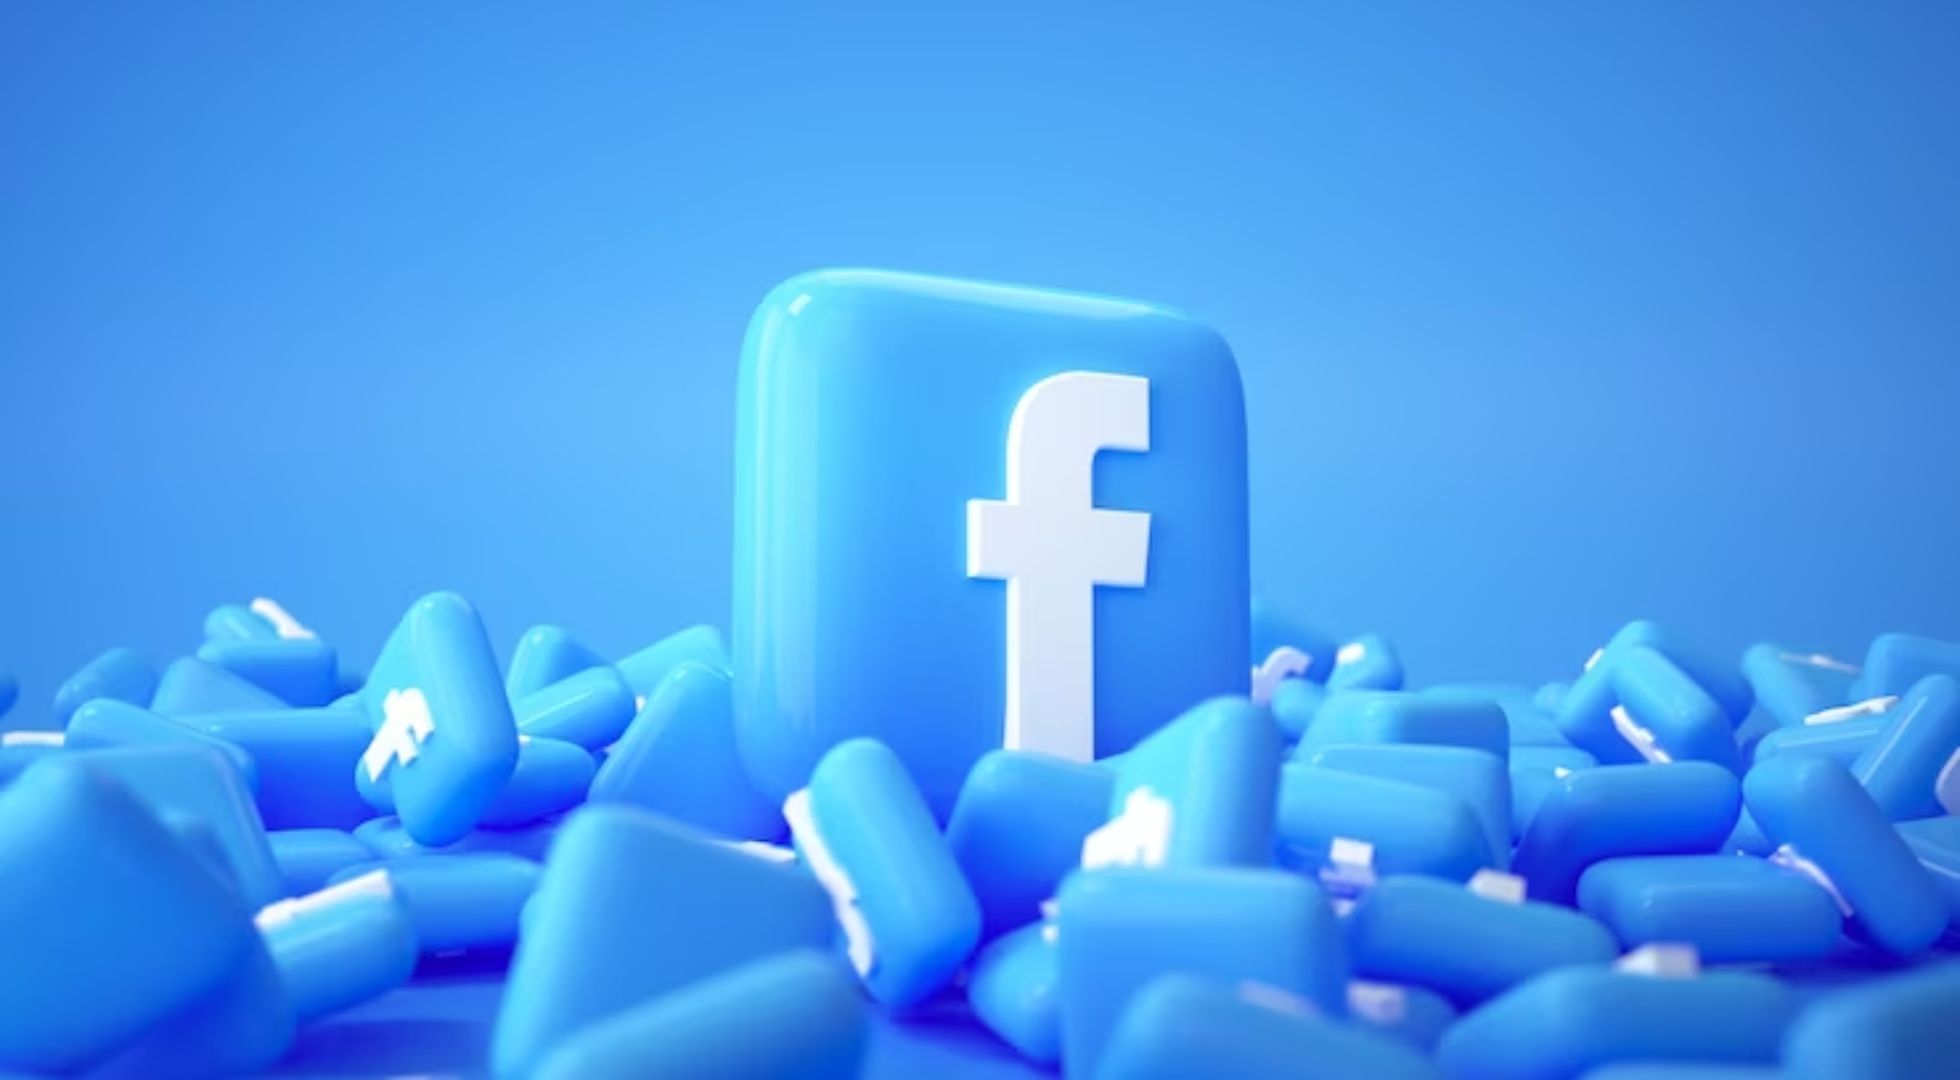 La historia detrás del acuerdo millonario de Facebook: El caso Cambridge Analytica (Freepik)